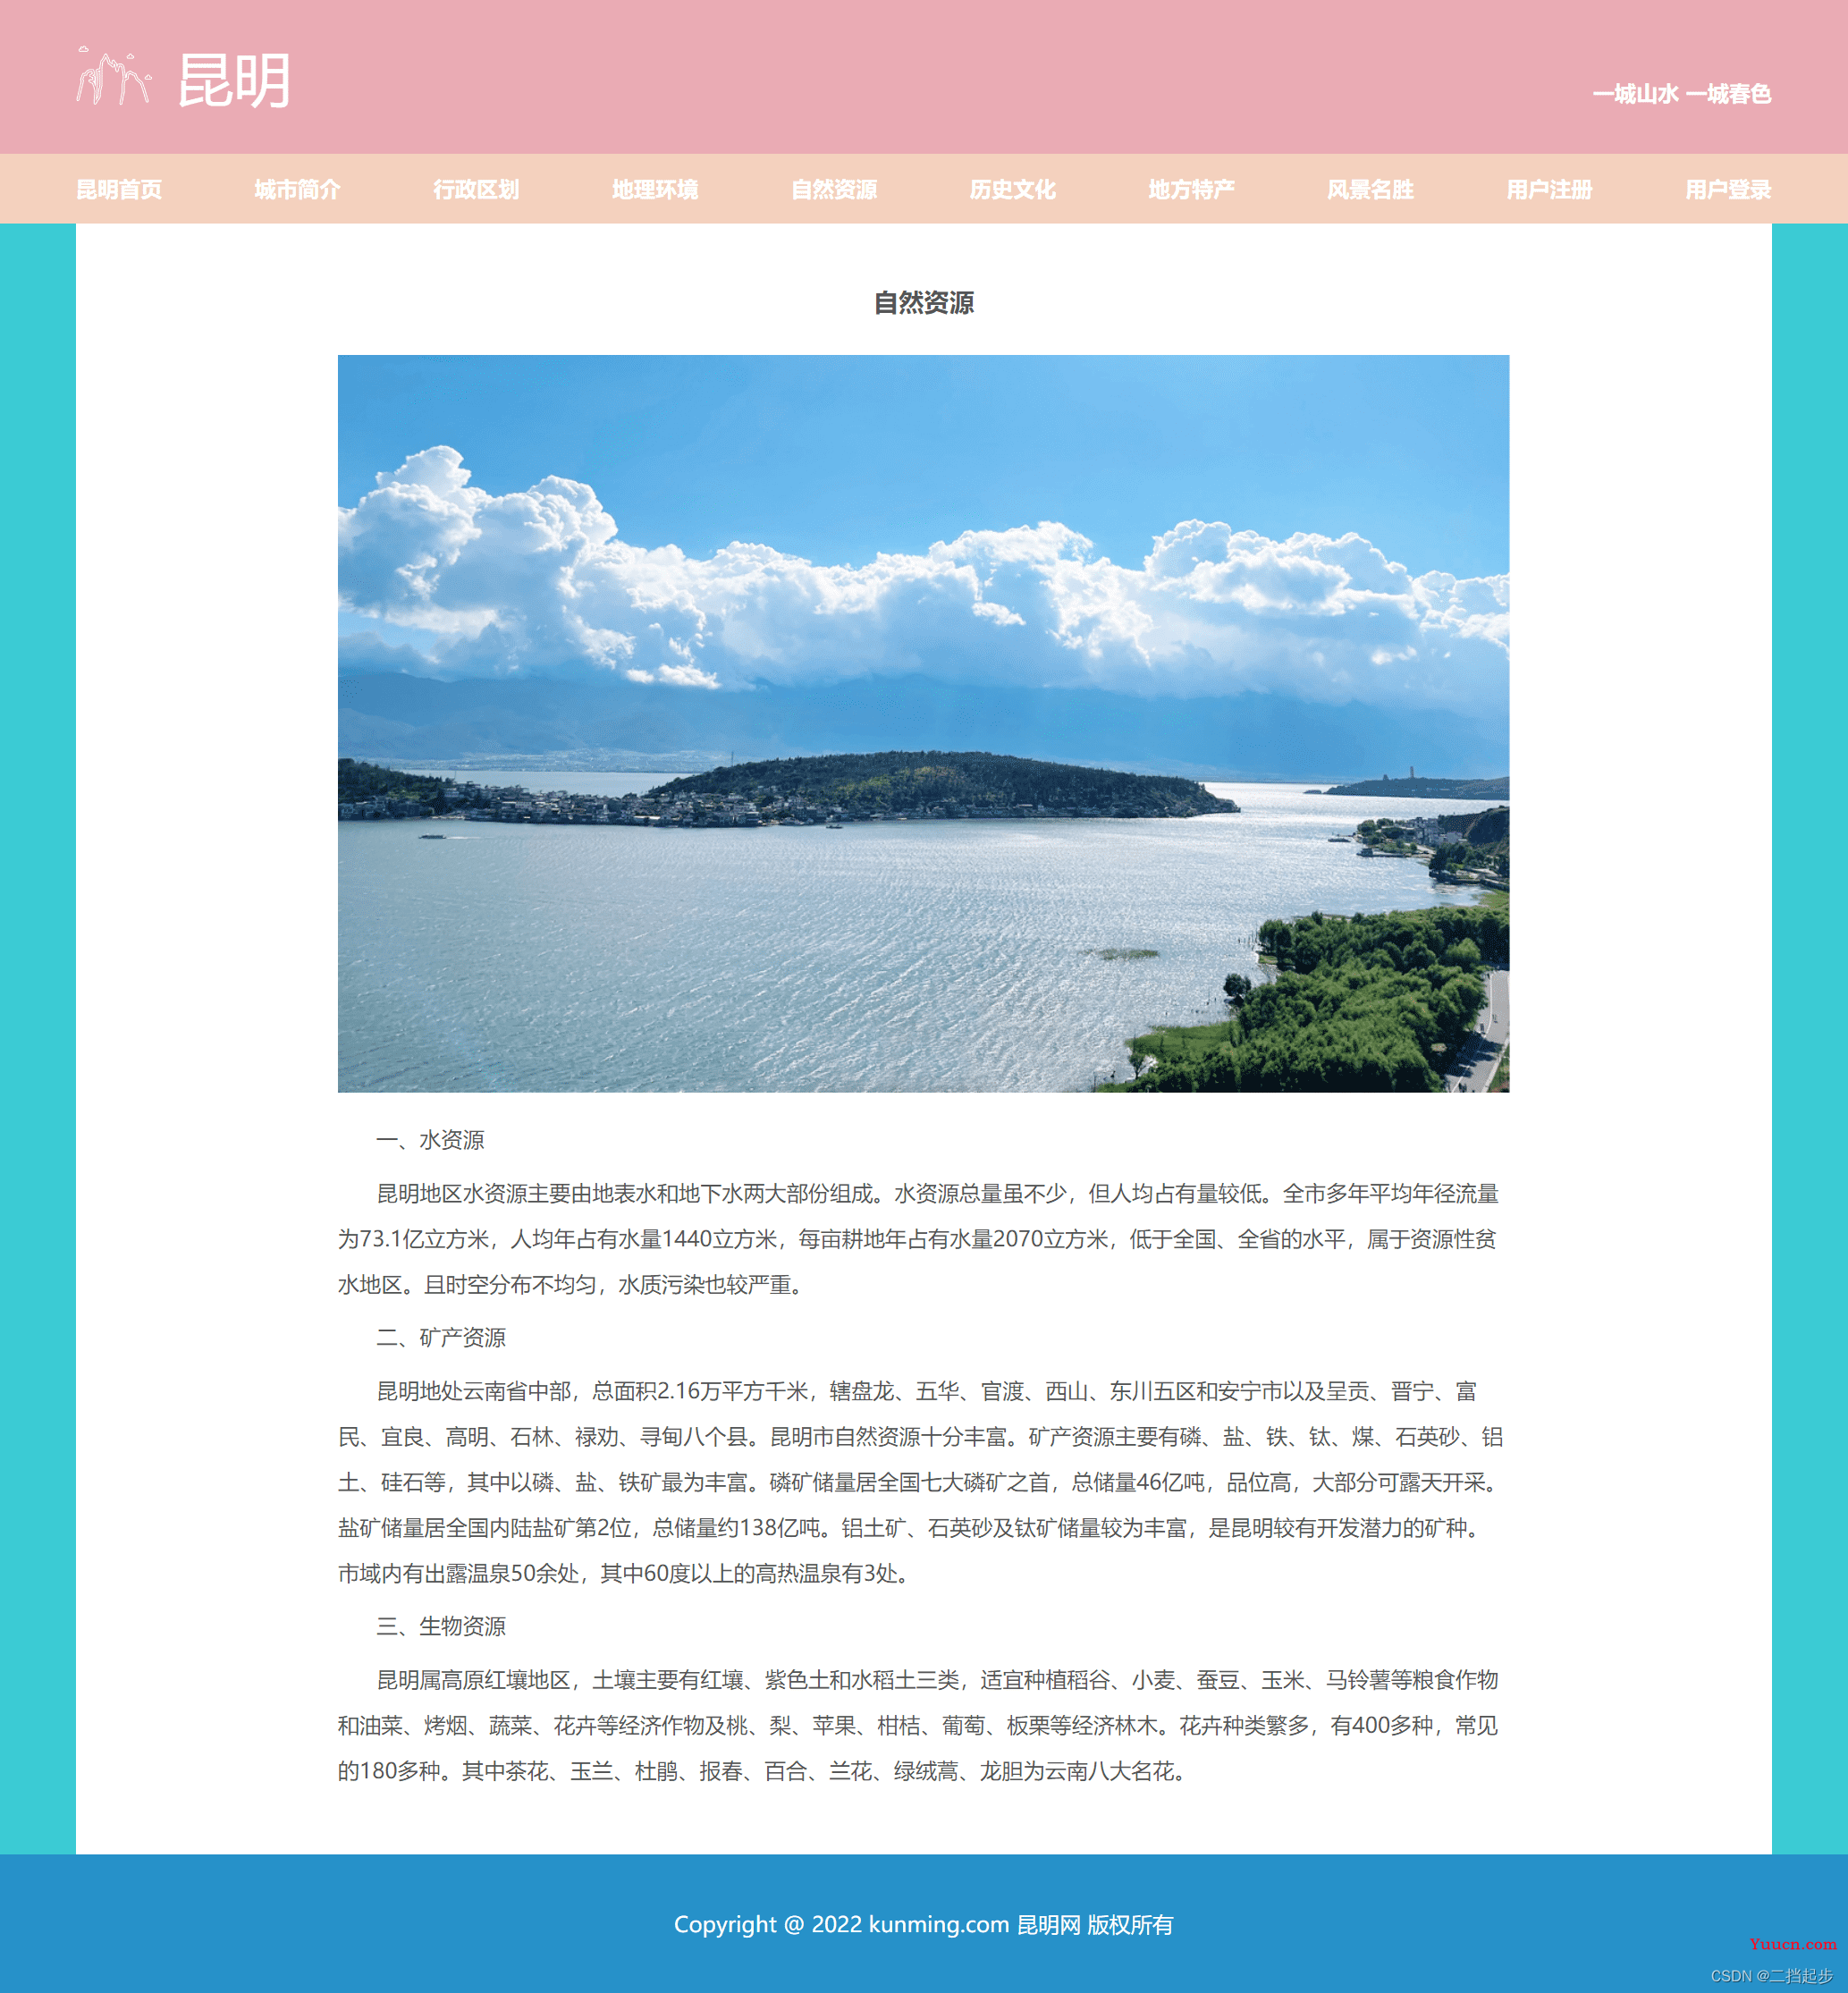 关于我的家乡html网页设计完整版 以家乡为主题的网页设计与实现